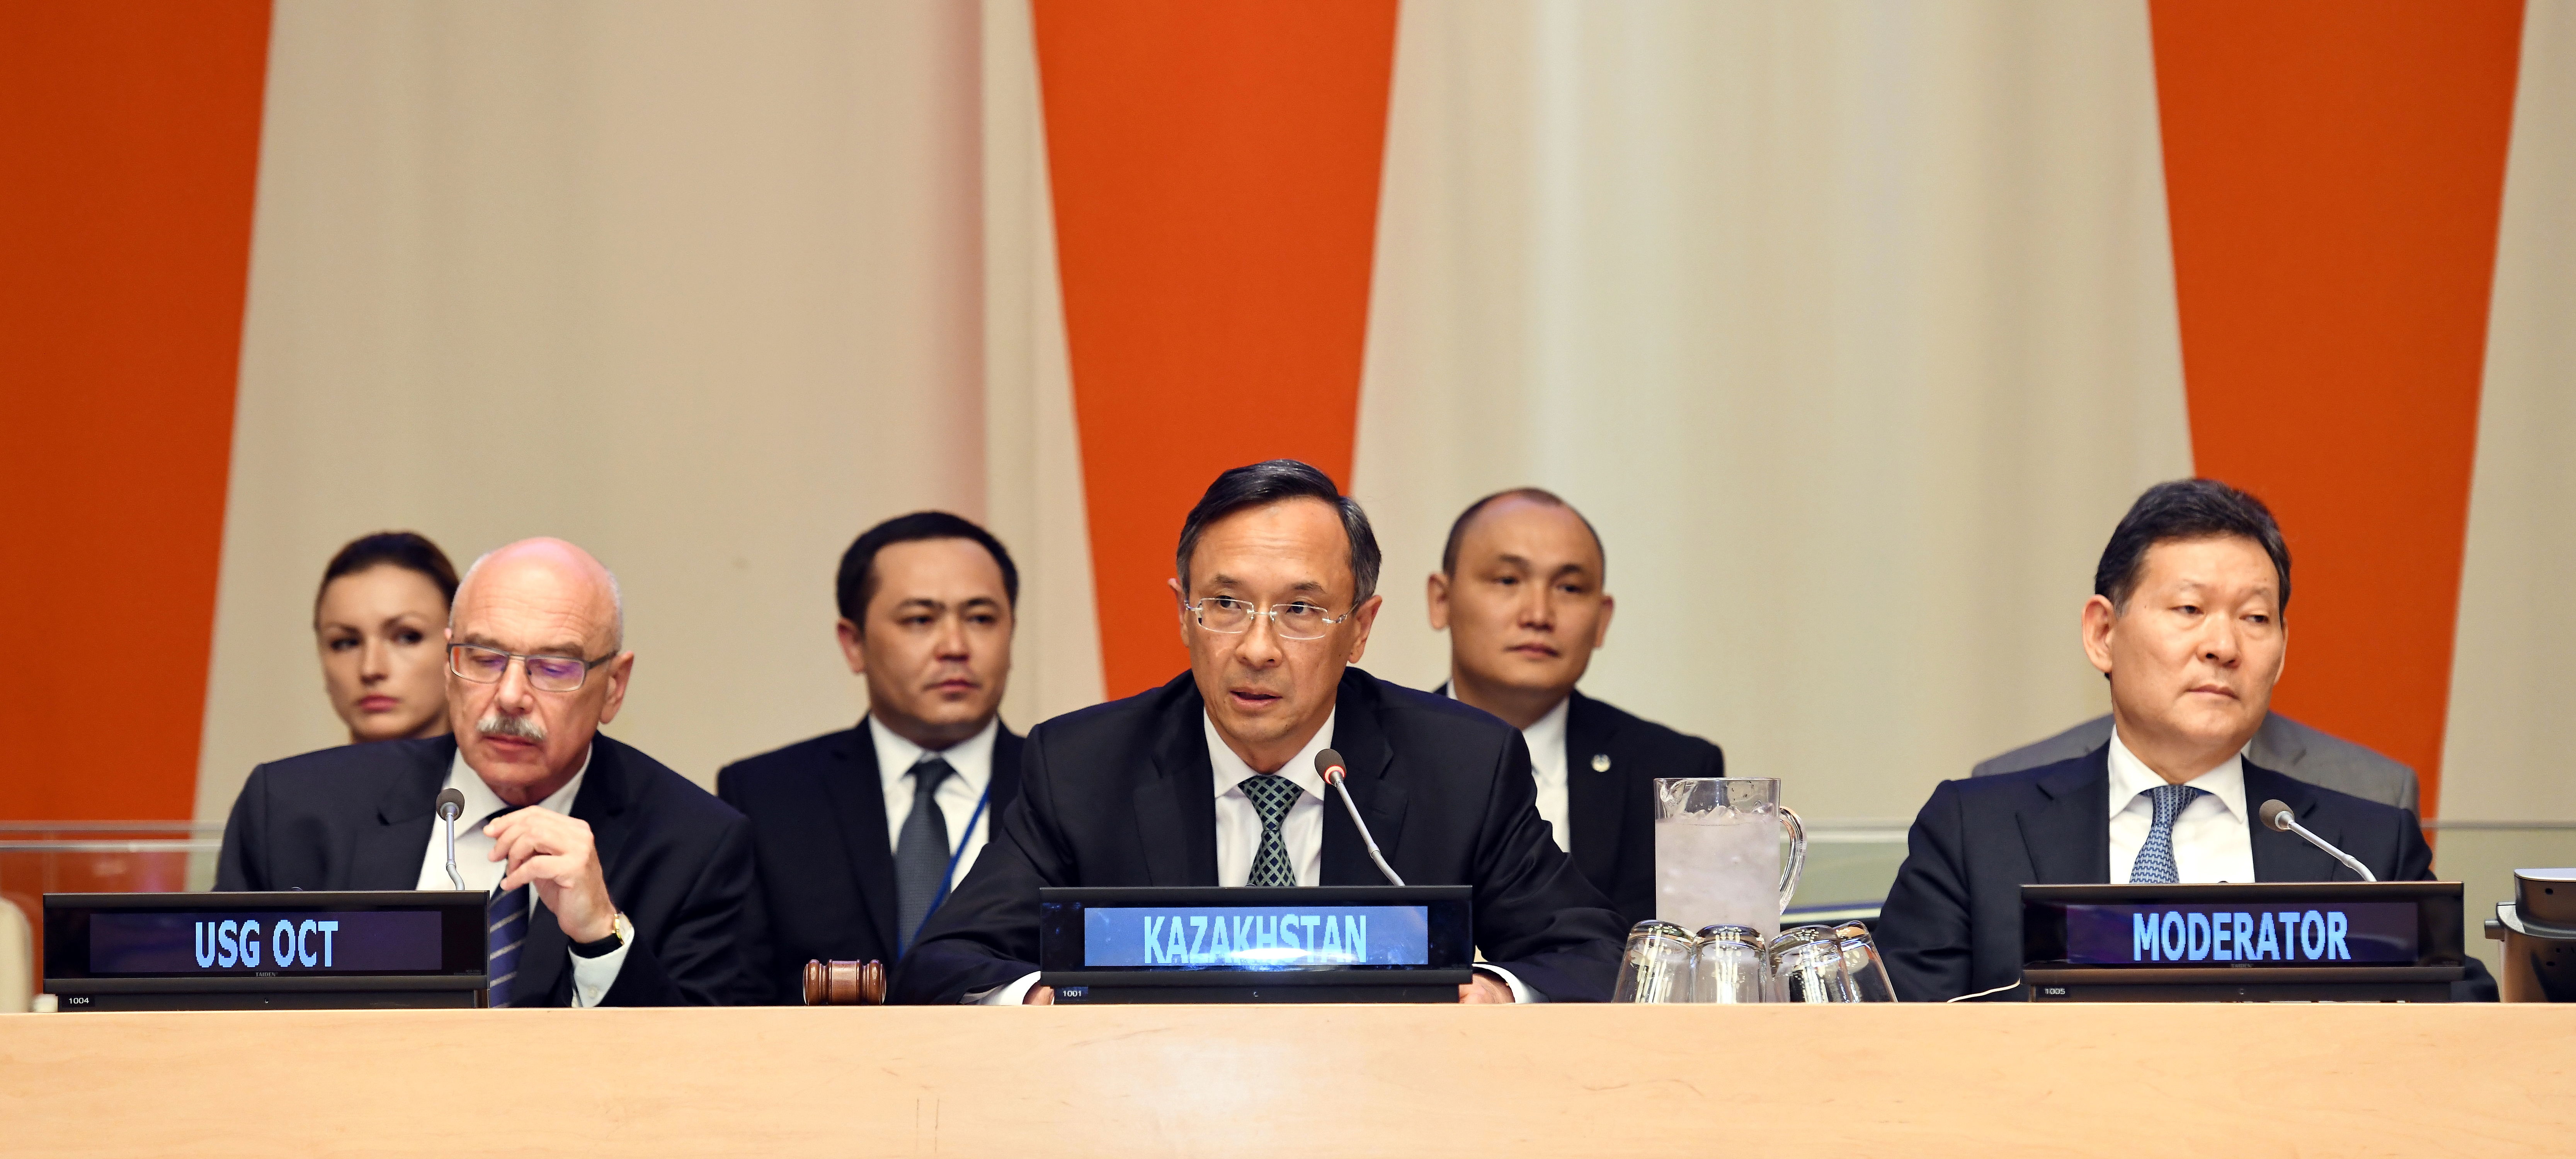 Более 70 стран мира поддержали казахстанский кодекс по достижению мира, свободного от терроризма